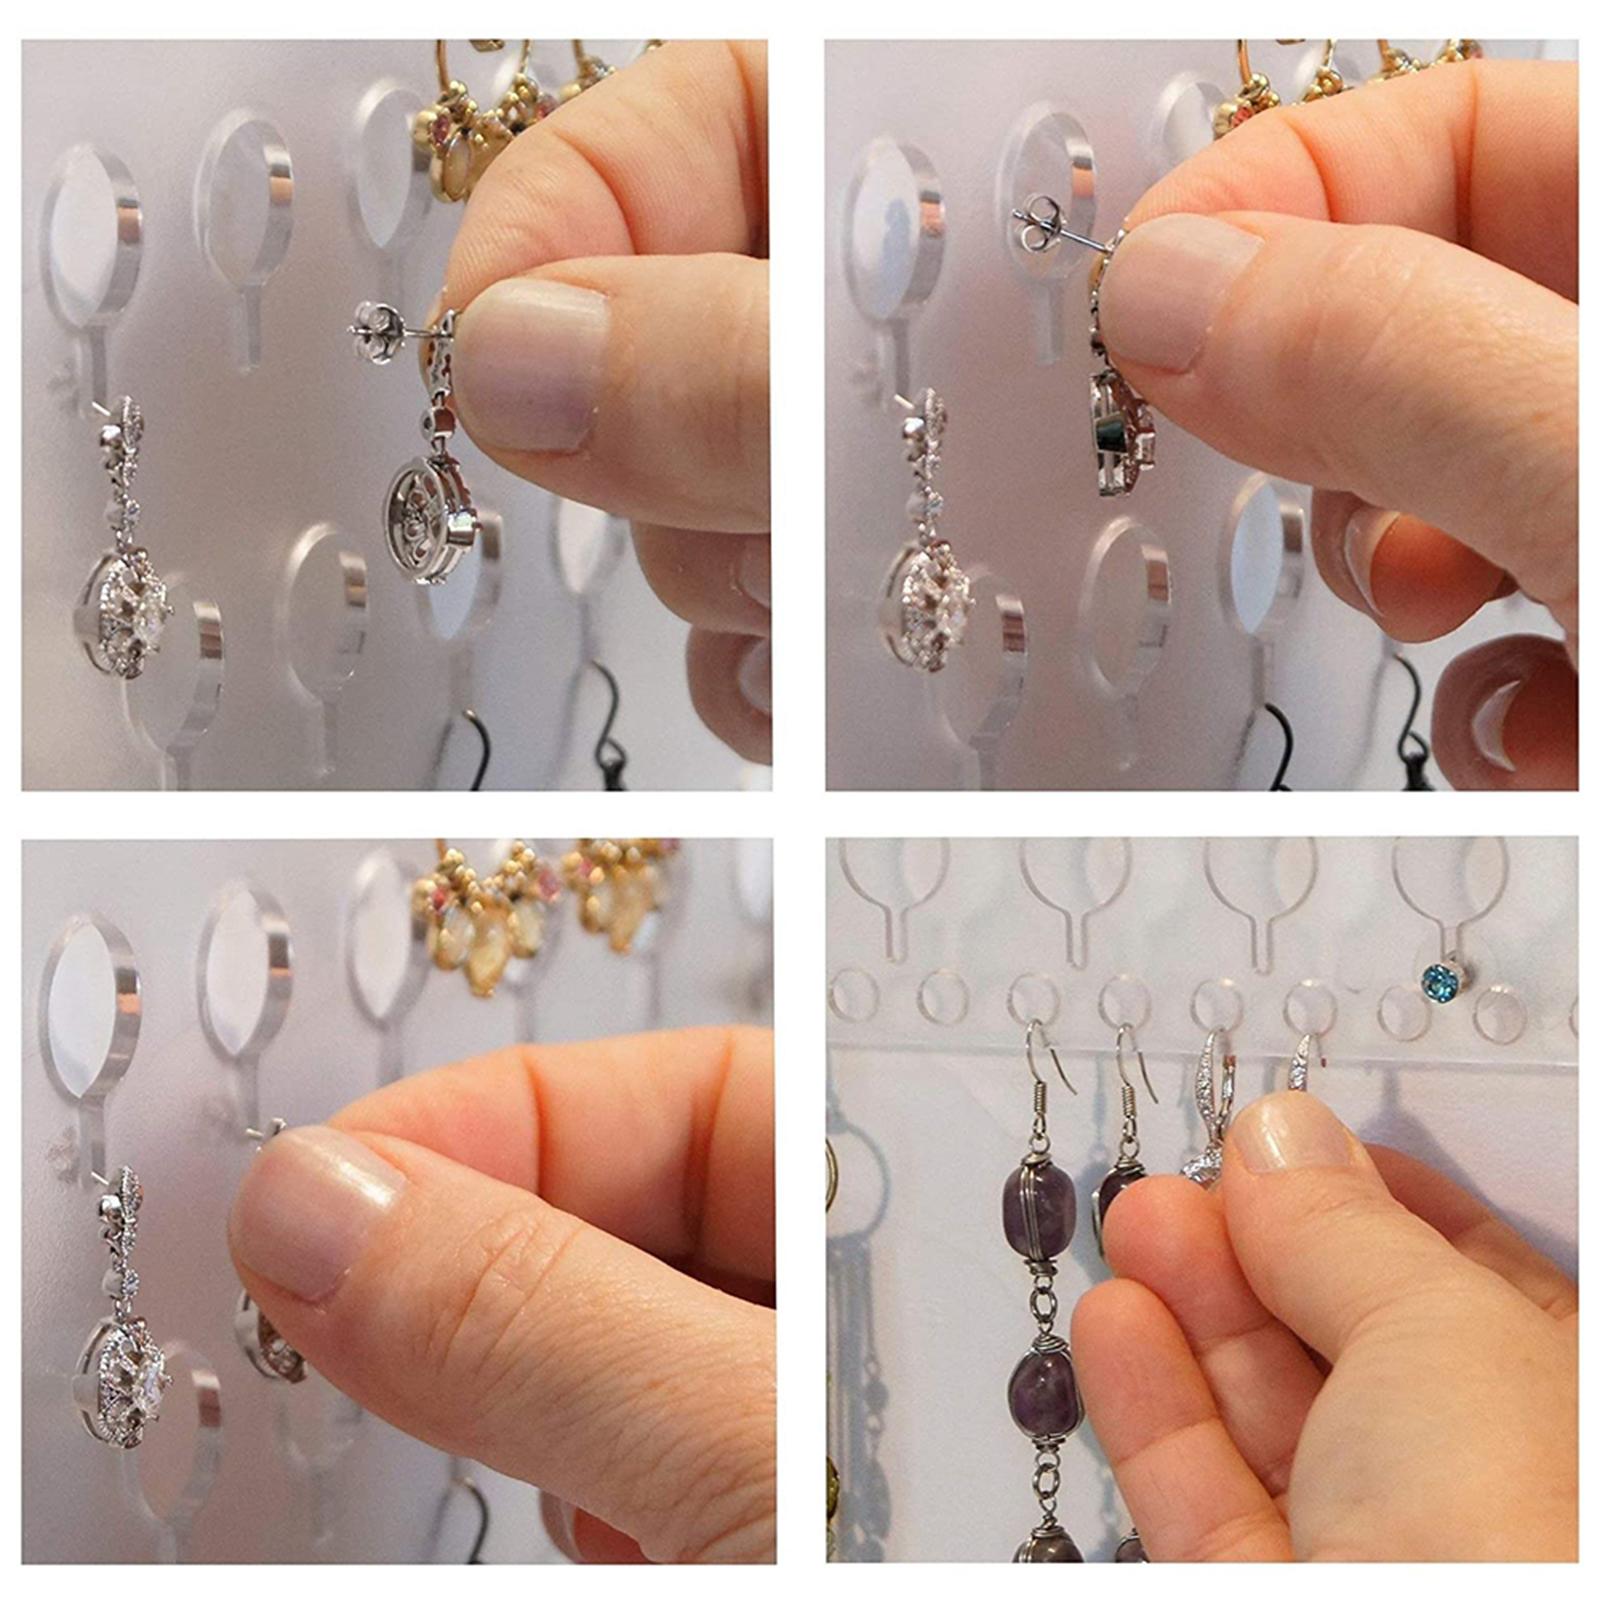 Acrylic Jewelry Organizer Wall Mounted, Hanging Jewelry Organizer Earring Organizer Necklace Holder, Jewelry Holder for Earrings, Necklaces & Rings